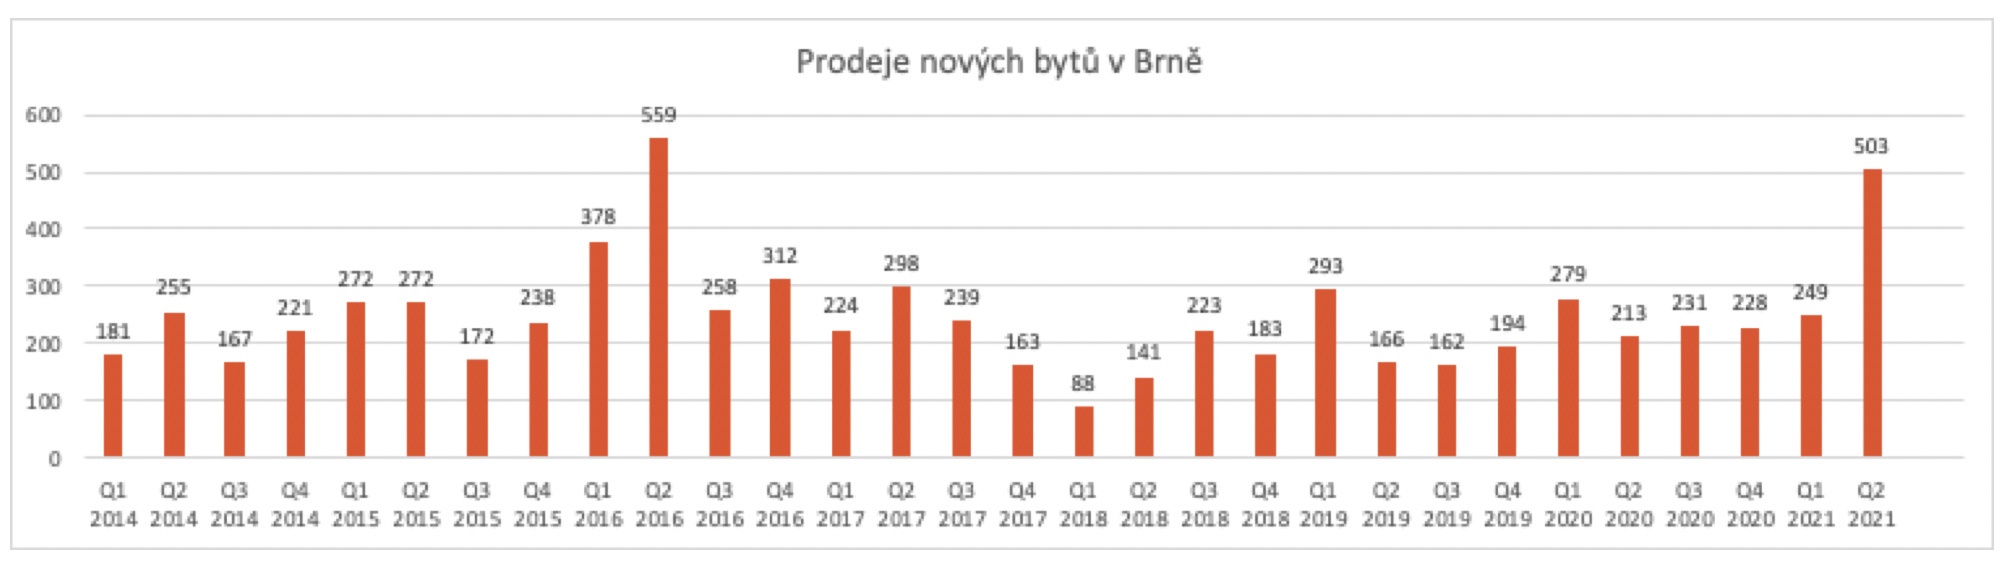 Prodeje nových bytů v Brně 2014 - 2021